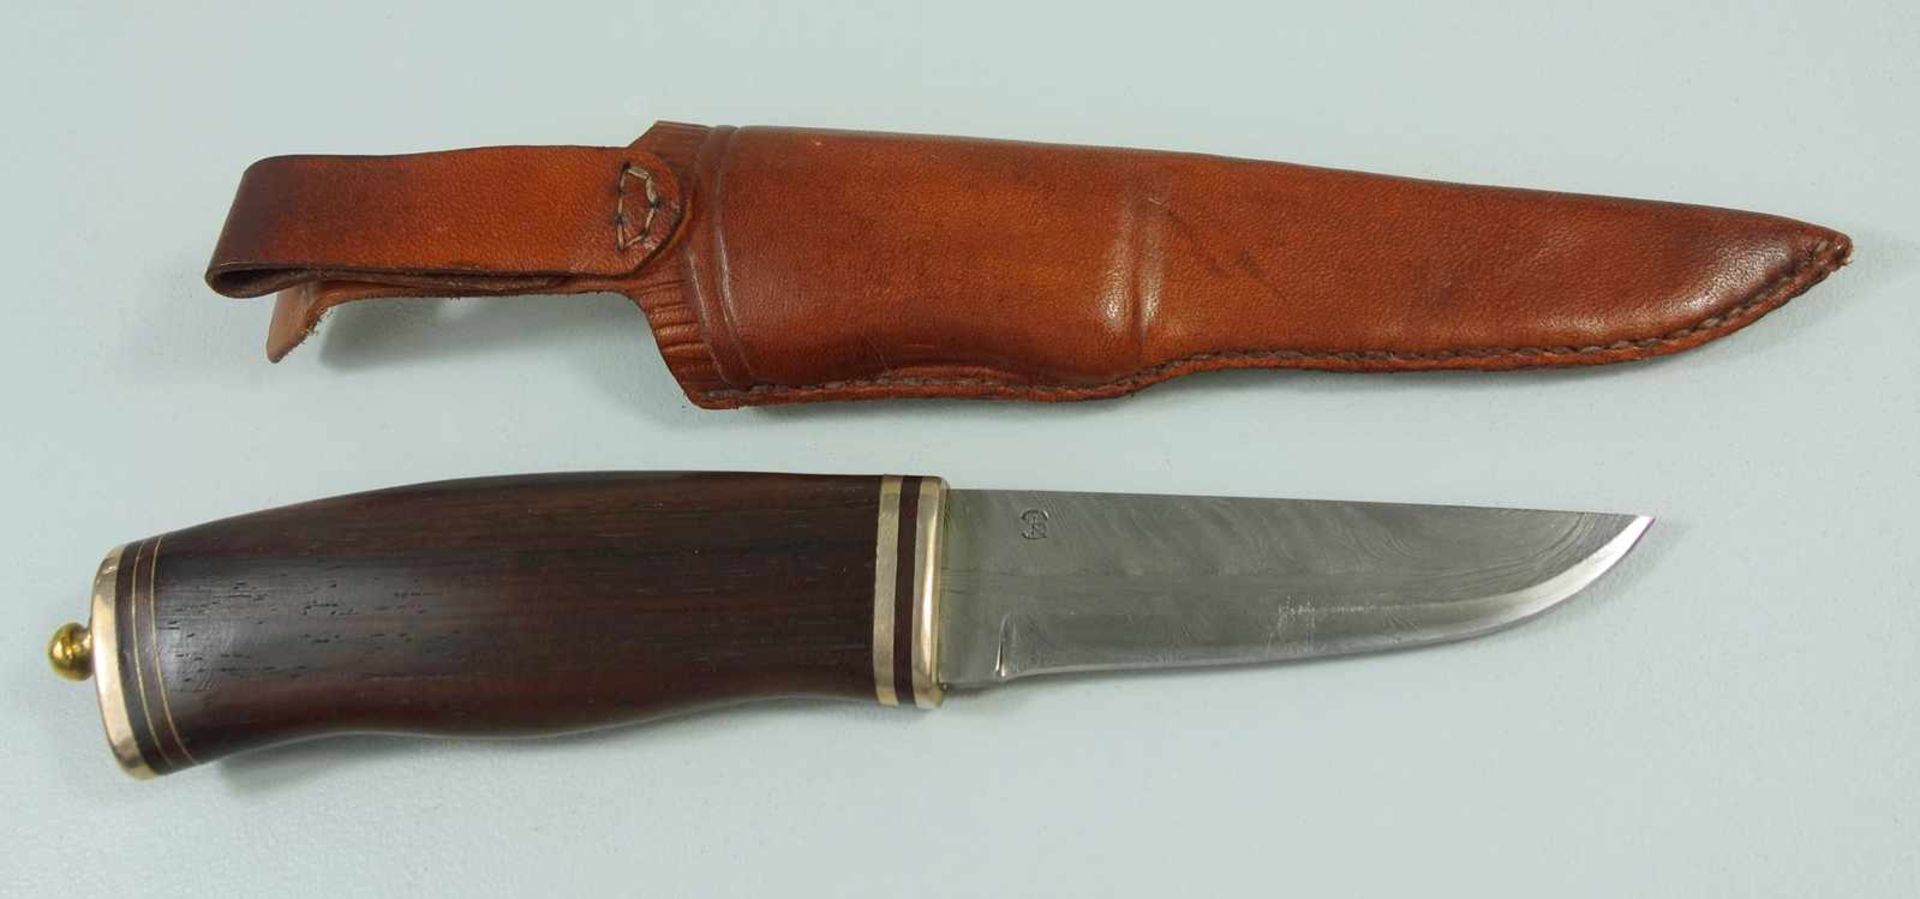 Damast- Jagdmesser mit Mahagoni-Griff, edle Damastklinge, Griff mit Abschlussknopf, mit welchem